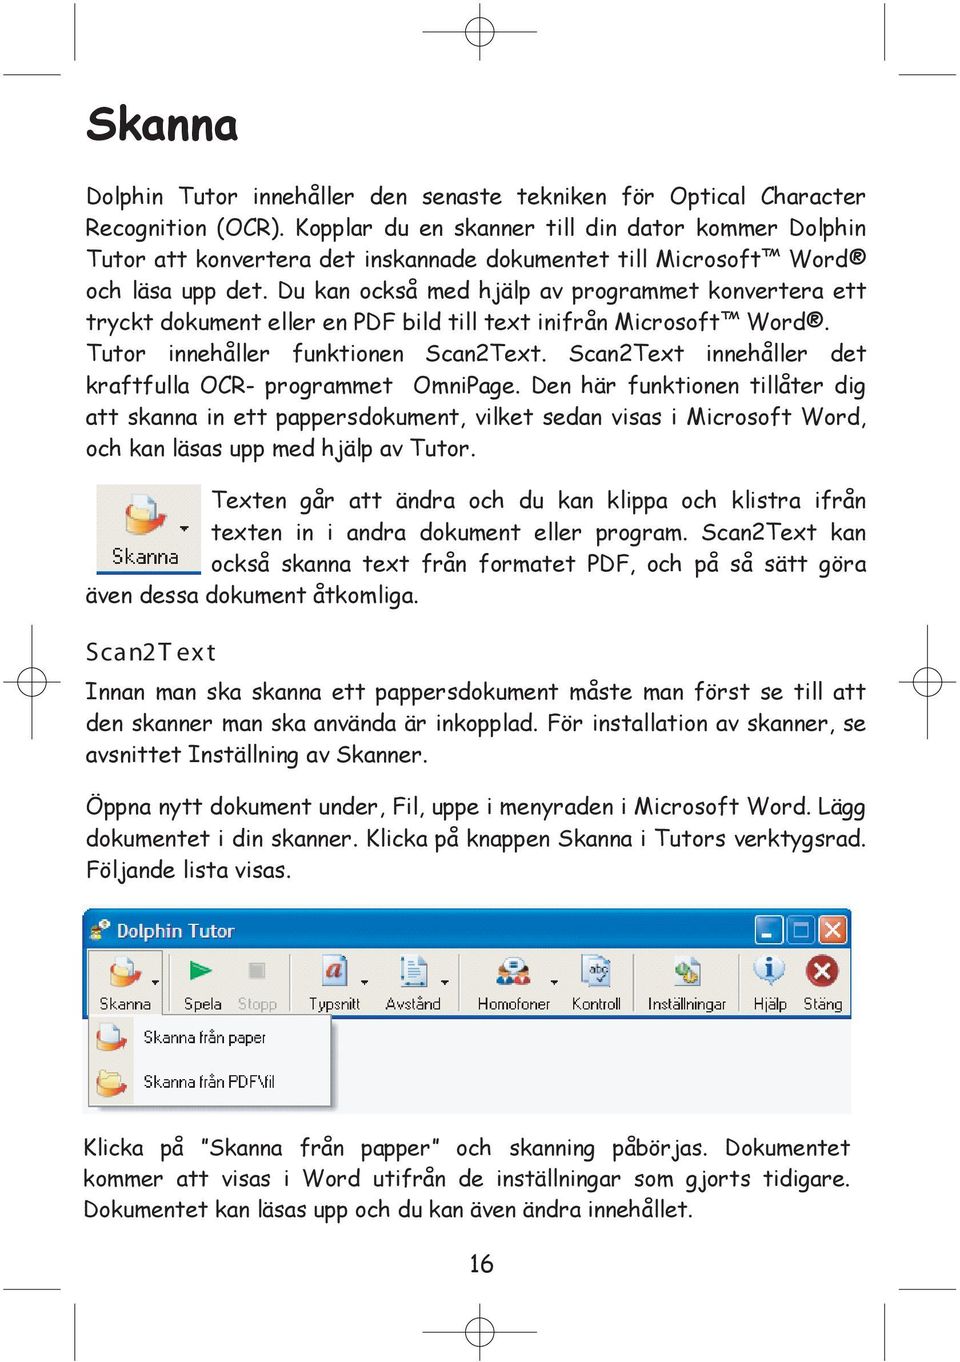 Du kan också med hjälp av programmet konvertera ett tryckt dokument eller en PDF bild till text inifrån Microsoft Word. Tutor innehåller funktionen Scan2Text.